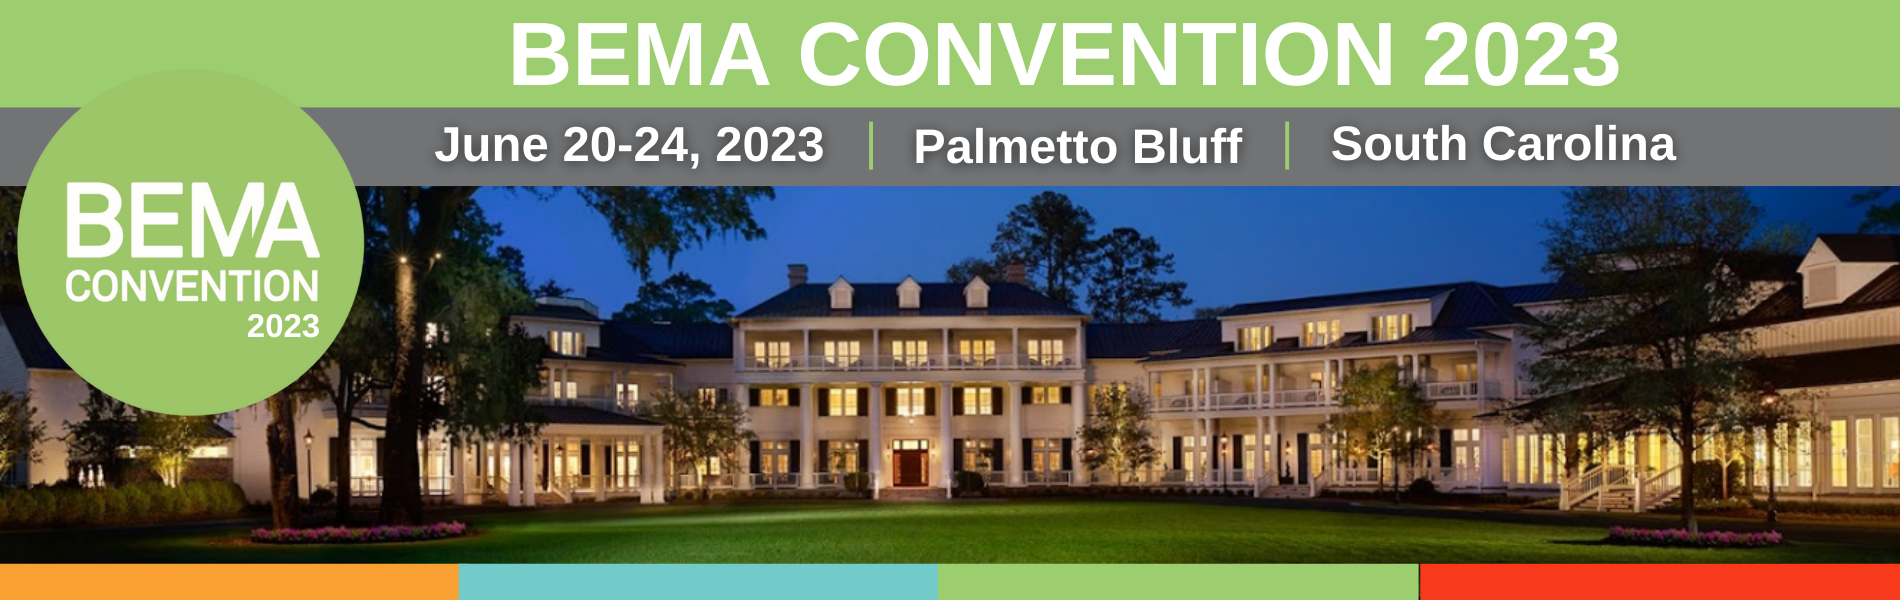 BEMA Convention 2023